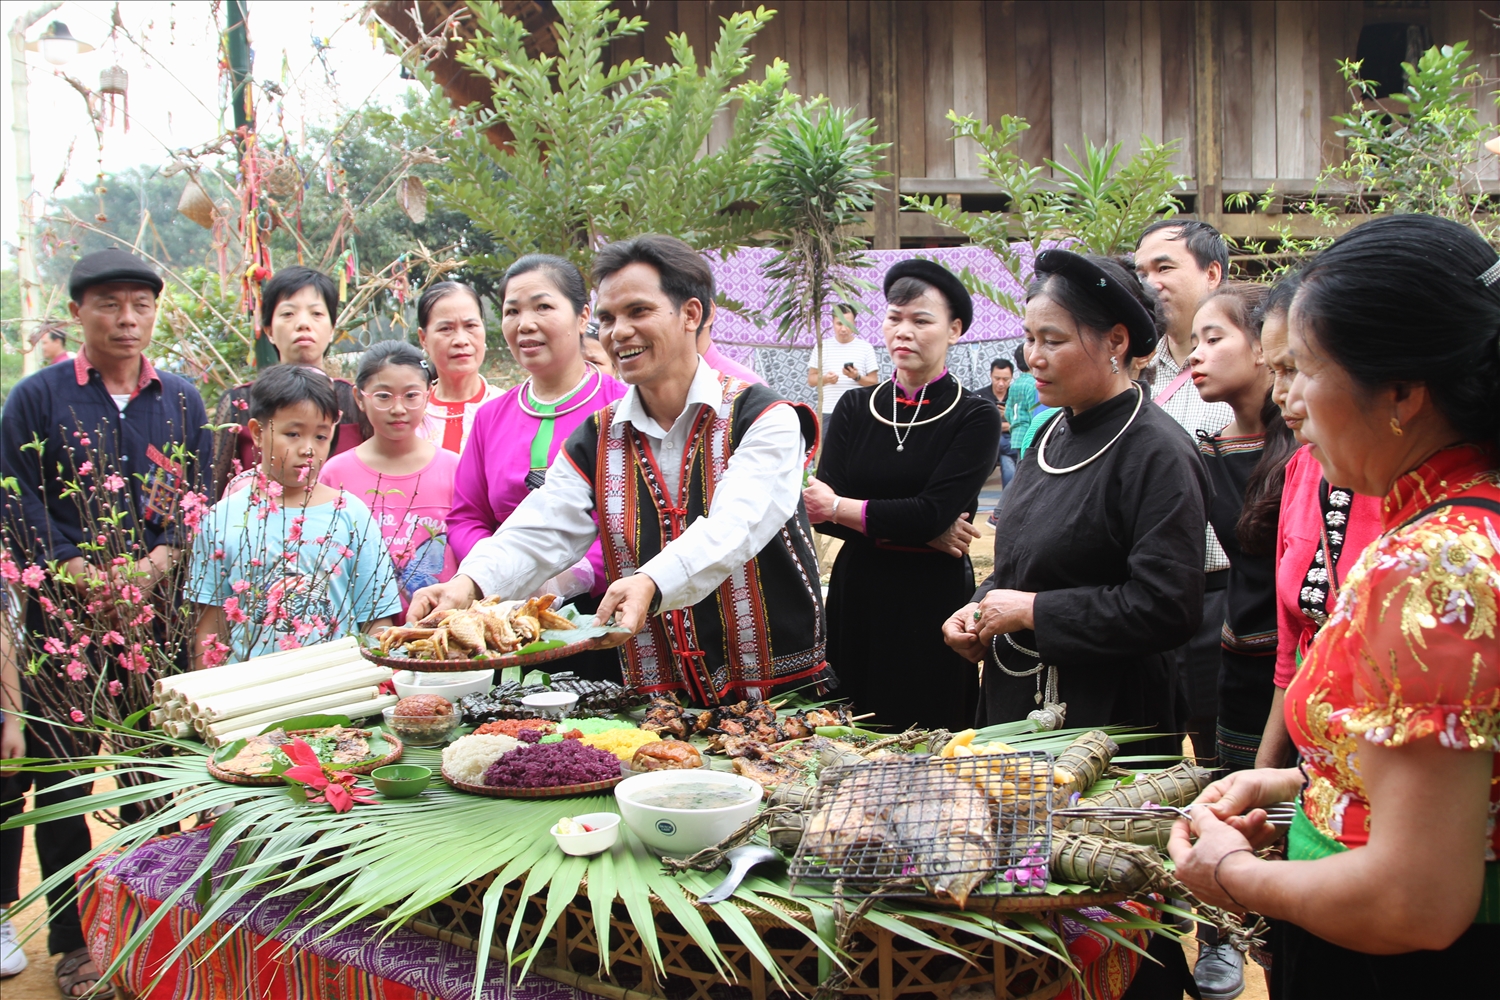 Bà con các dân tộc tại Ngôi nhà chung giới thiệu các món ẩm thực đến với du khách